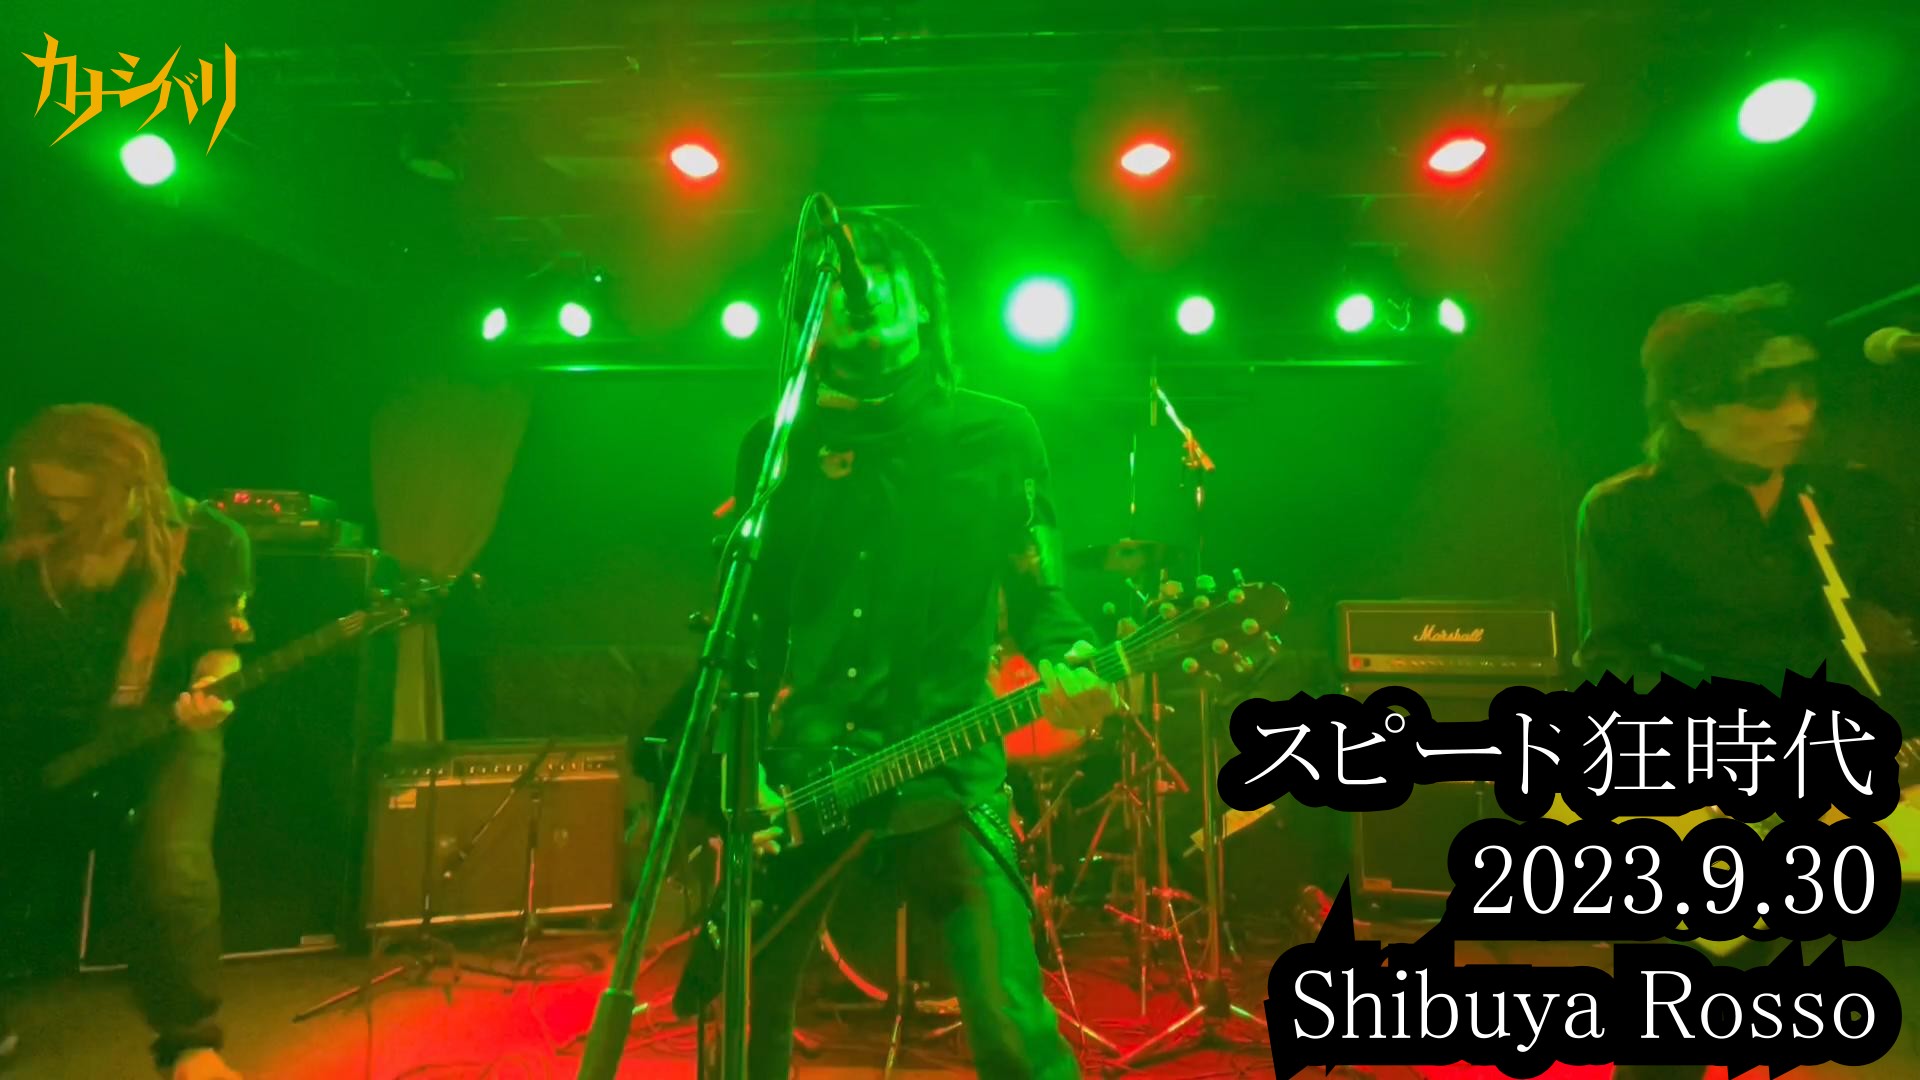 スピード狂時代 - Live at Shibuya Rosso / 2023.9.30